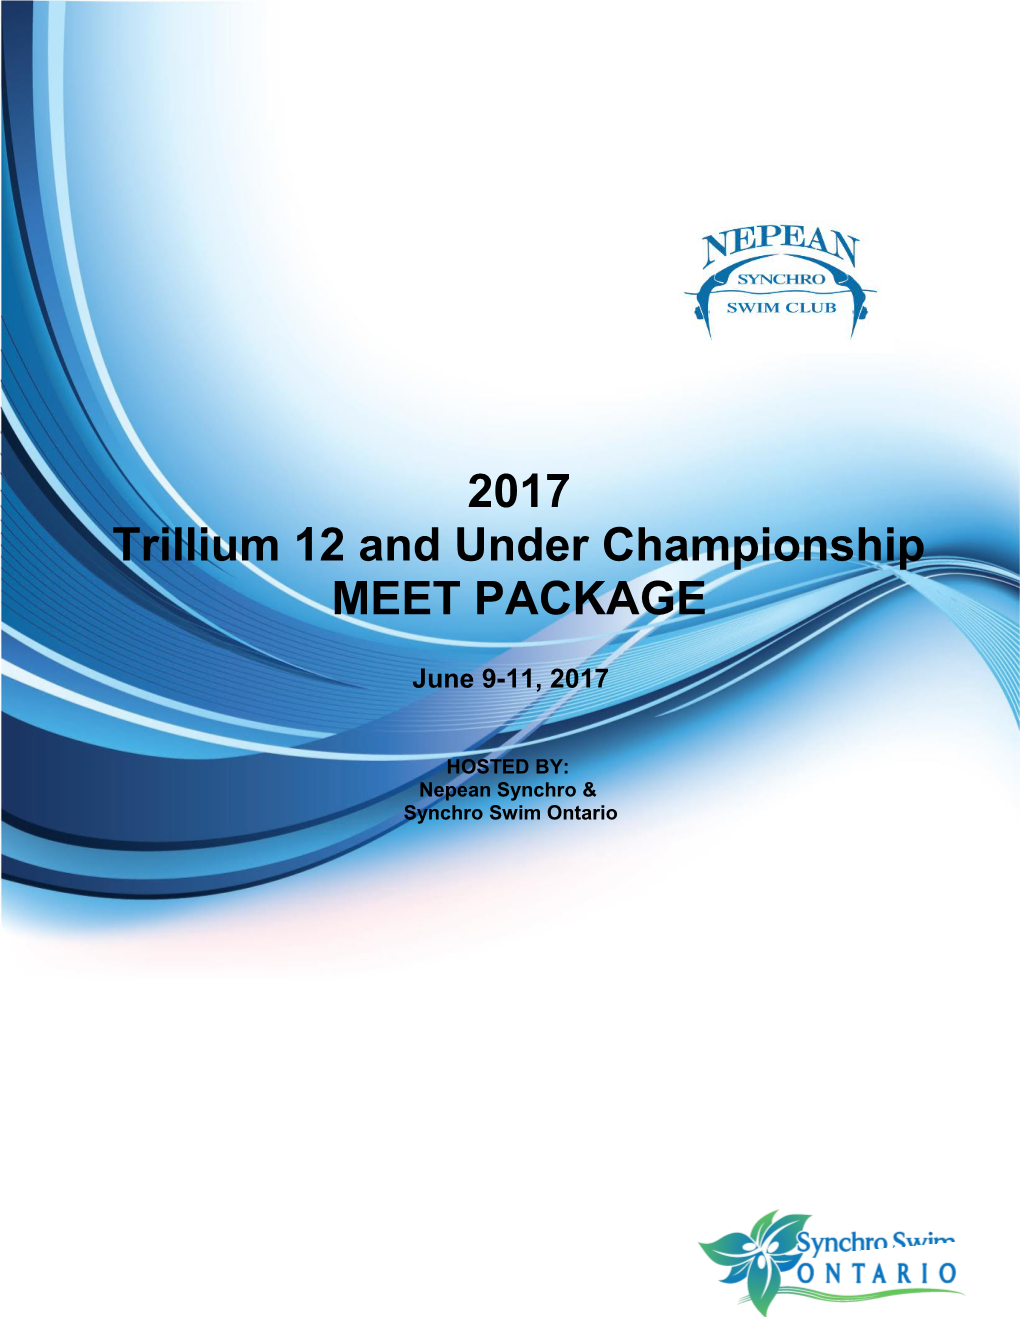 Trillium 12 and Under Championship